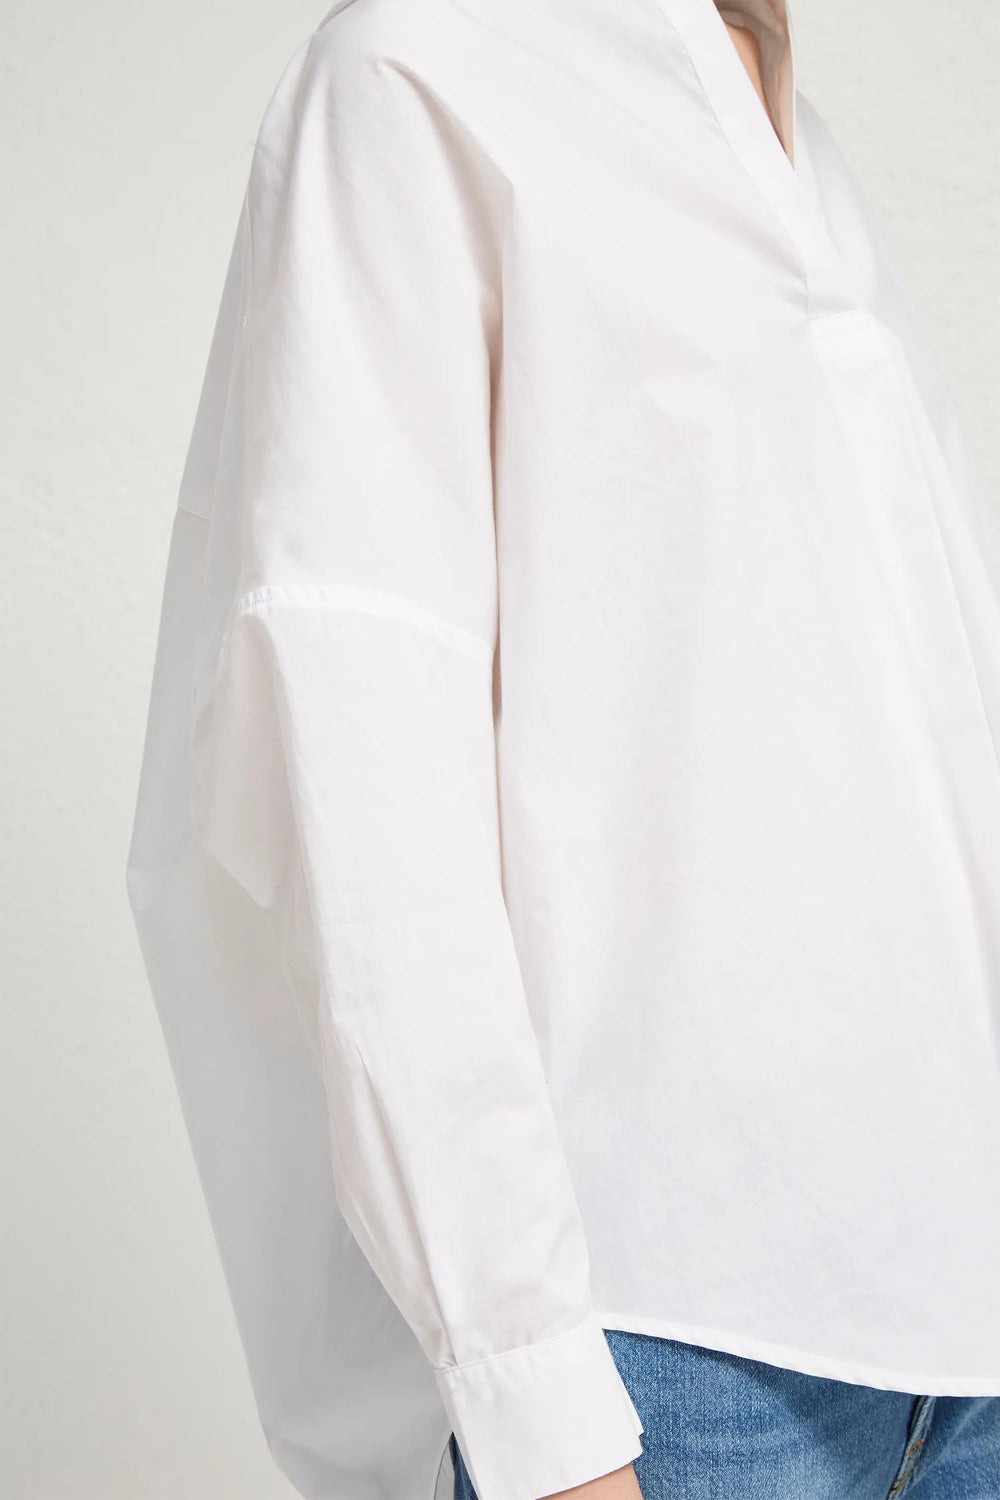 Rhodes Poplin Popover Shirt in Linen White - Madison's Niche 